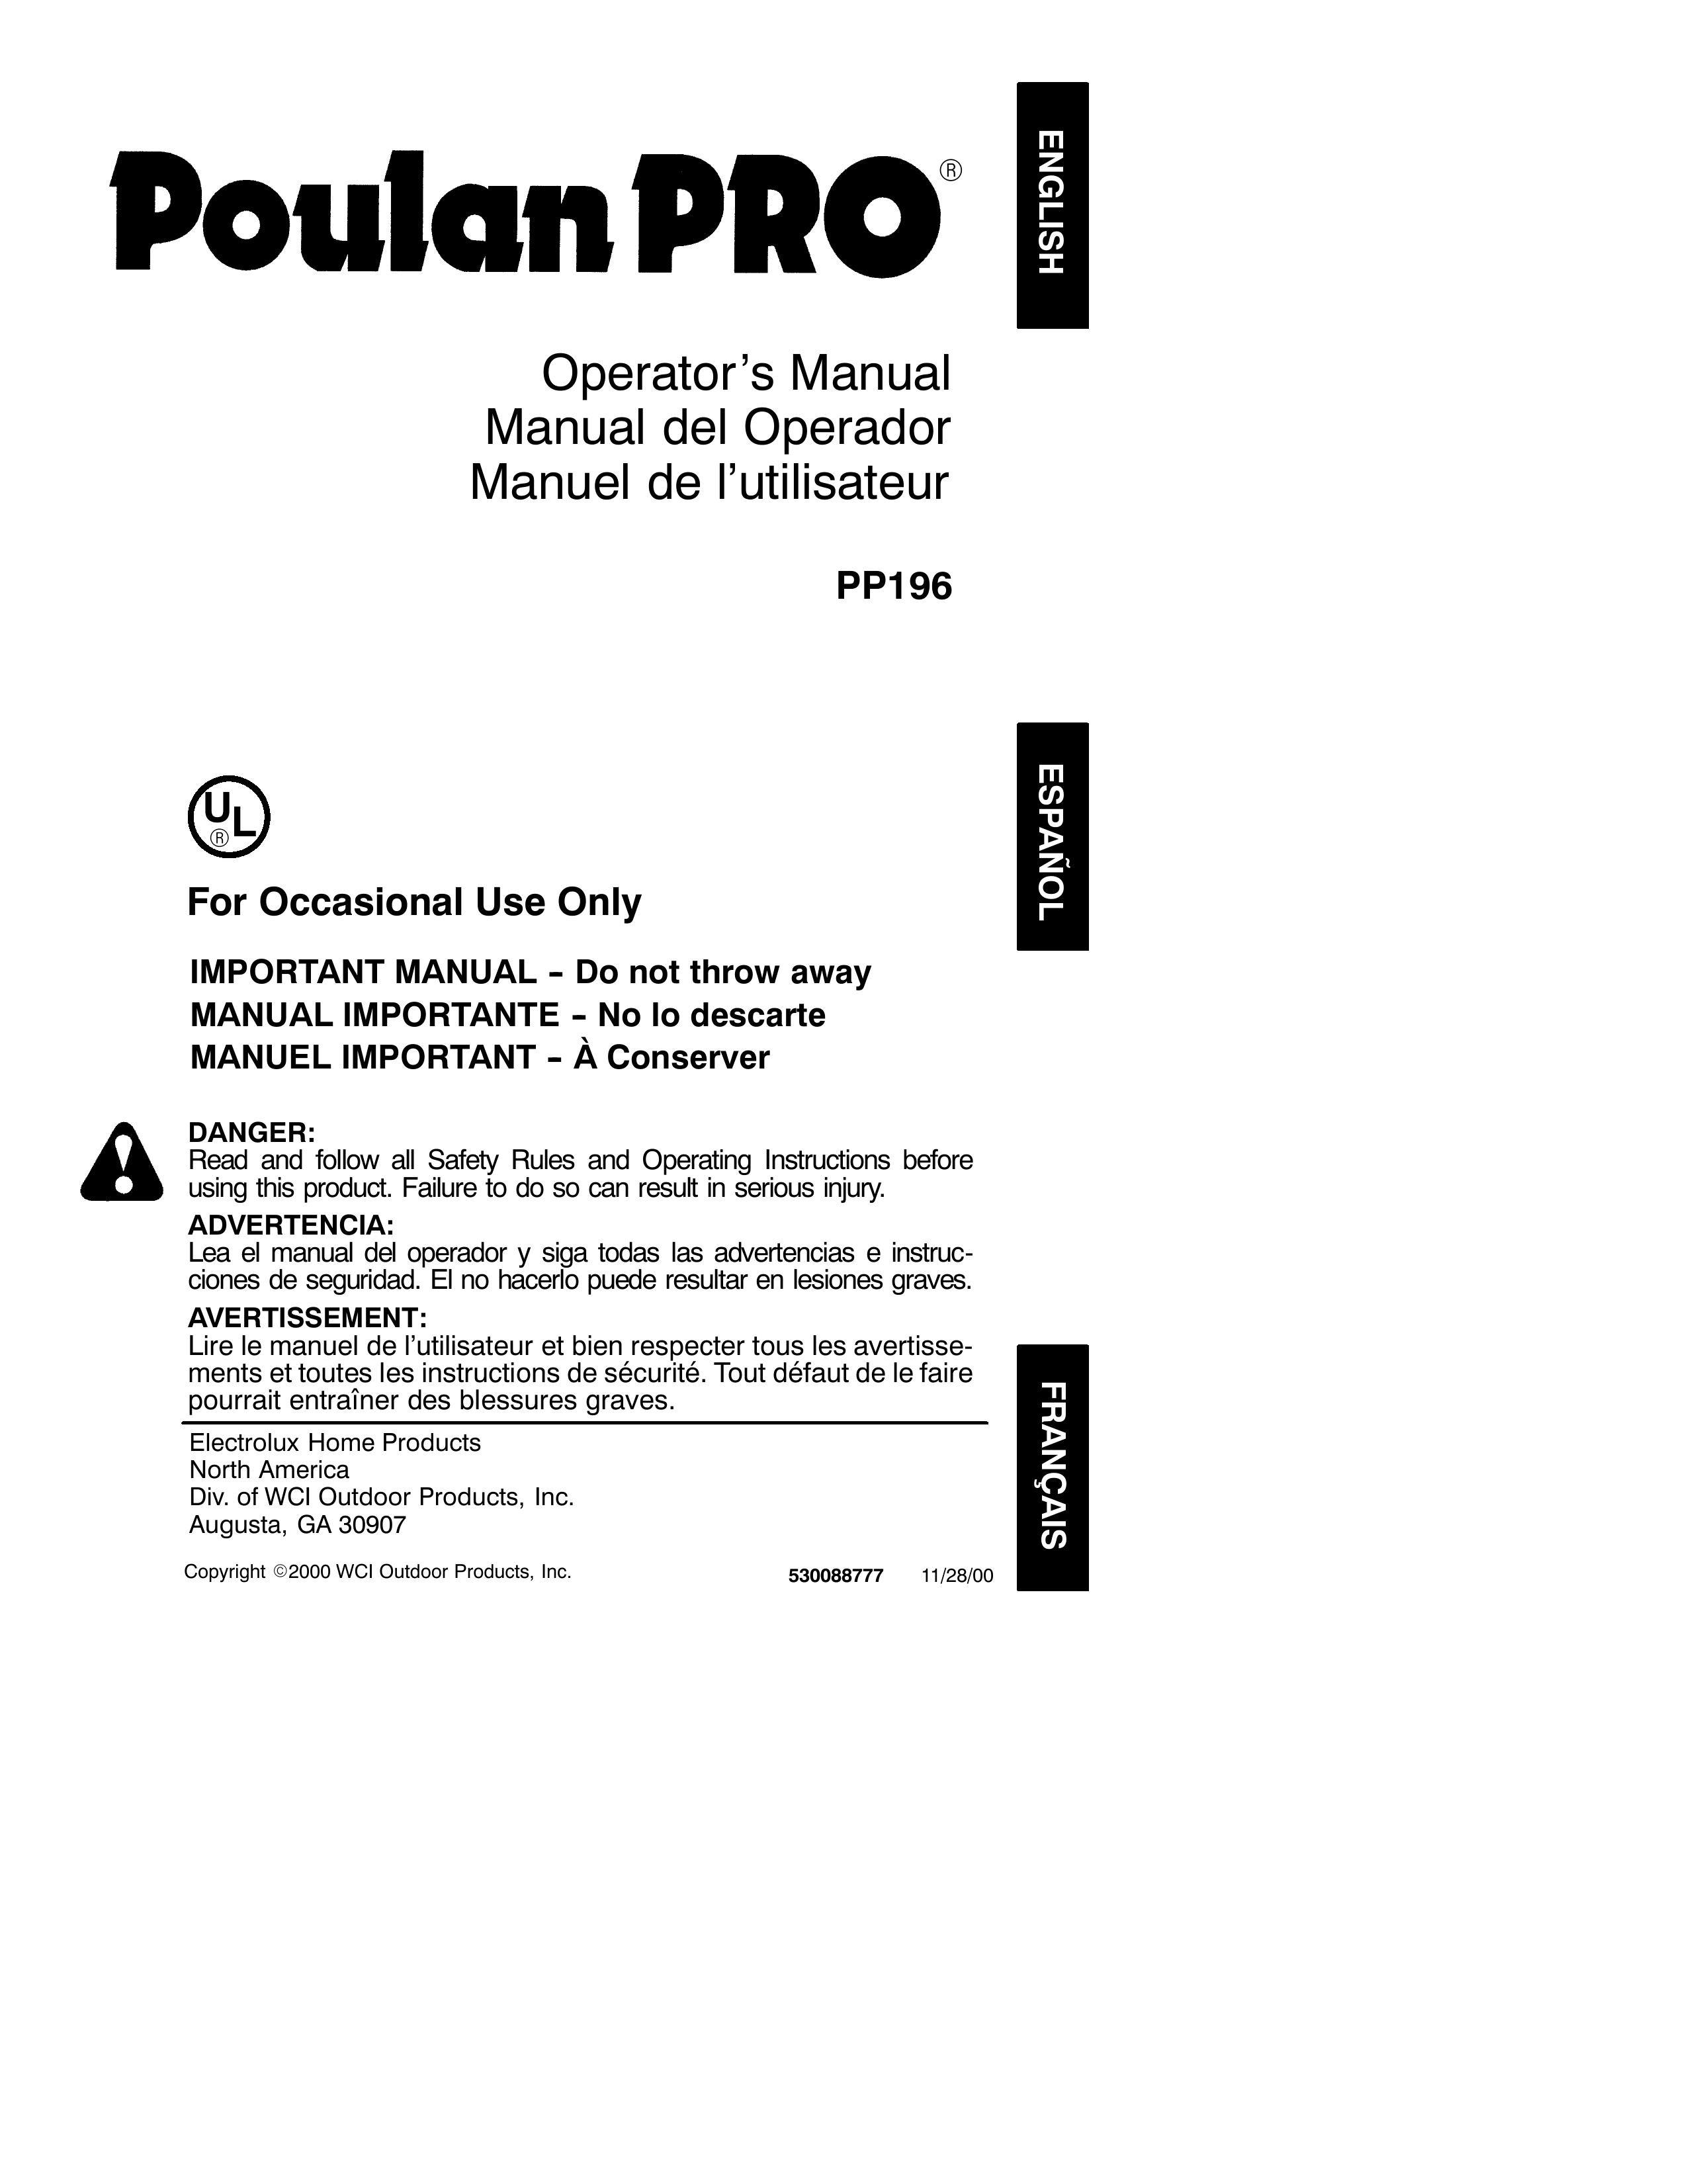 Poulan 530088777 Trimmer User Manual